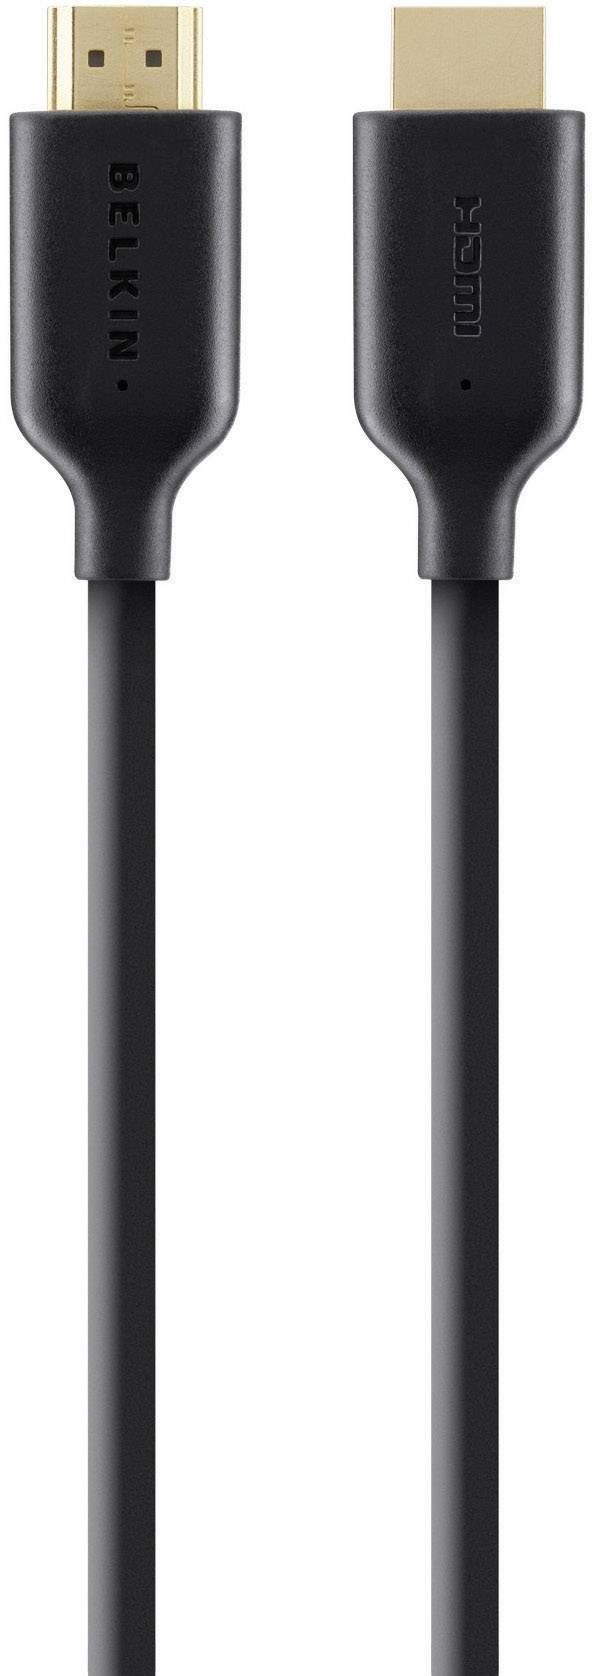 BELKIN HDMI Anschlusskabel [1x HDMI-Stecker - 1x HDMI-Stecker] 1 m Schwarz